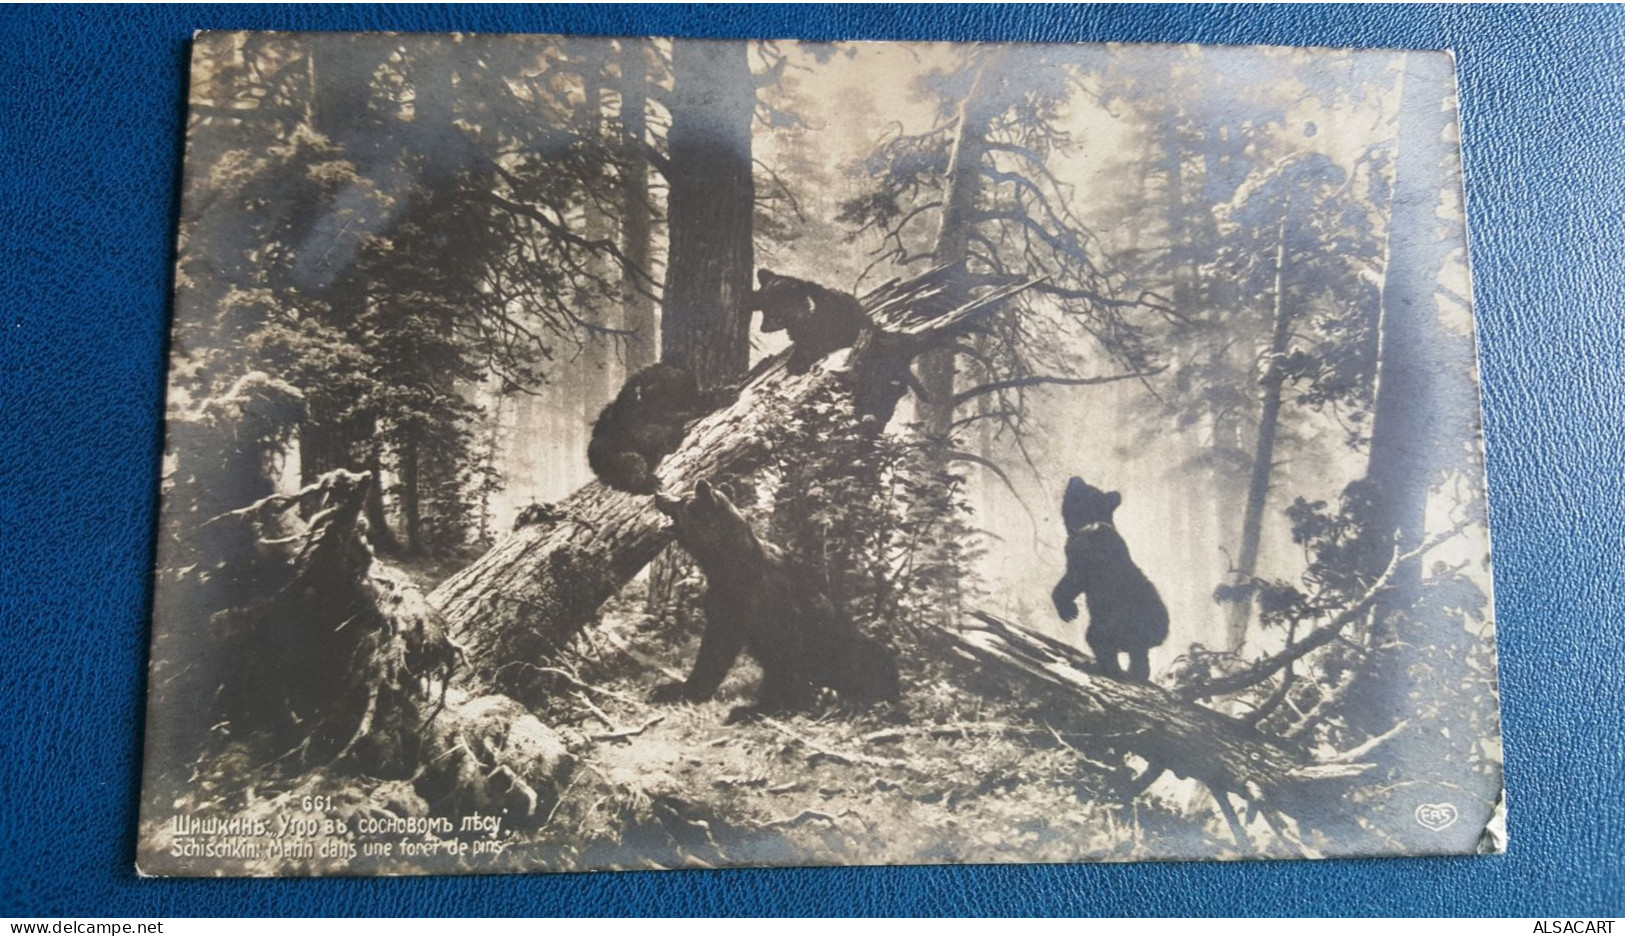 Carte Photo De Russie , Matin Dans Une Forêt , Une Famille D'ours - Russie